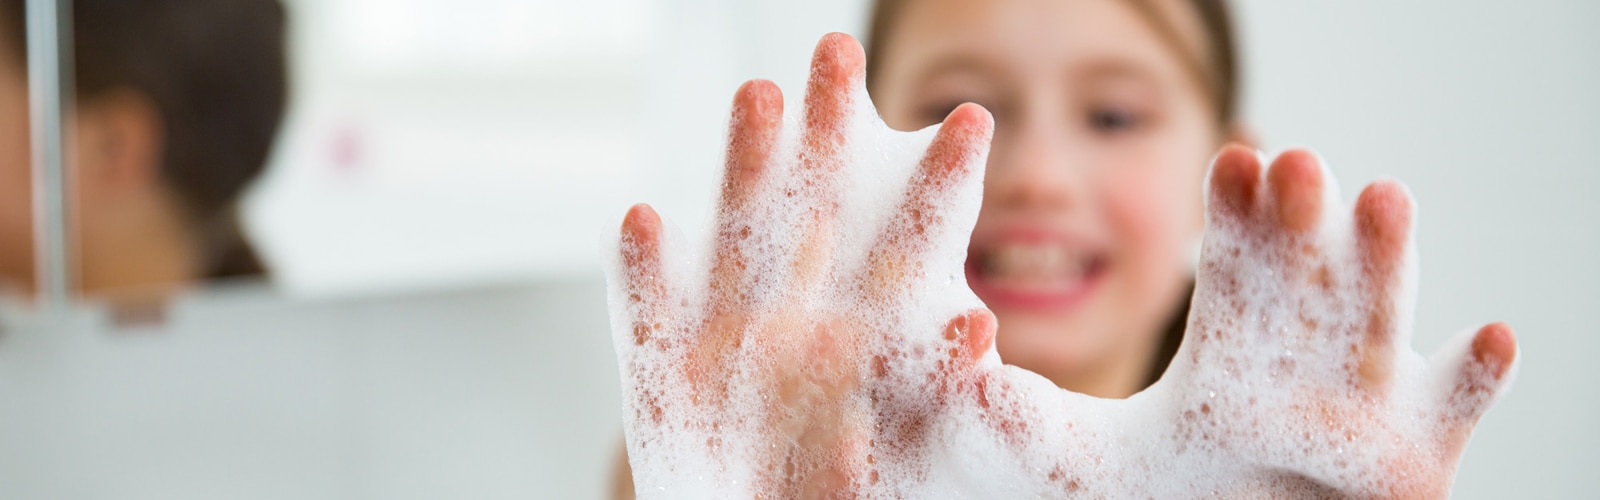 Mâinile' fetelor înmuiate în spumă de săpun